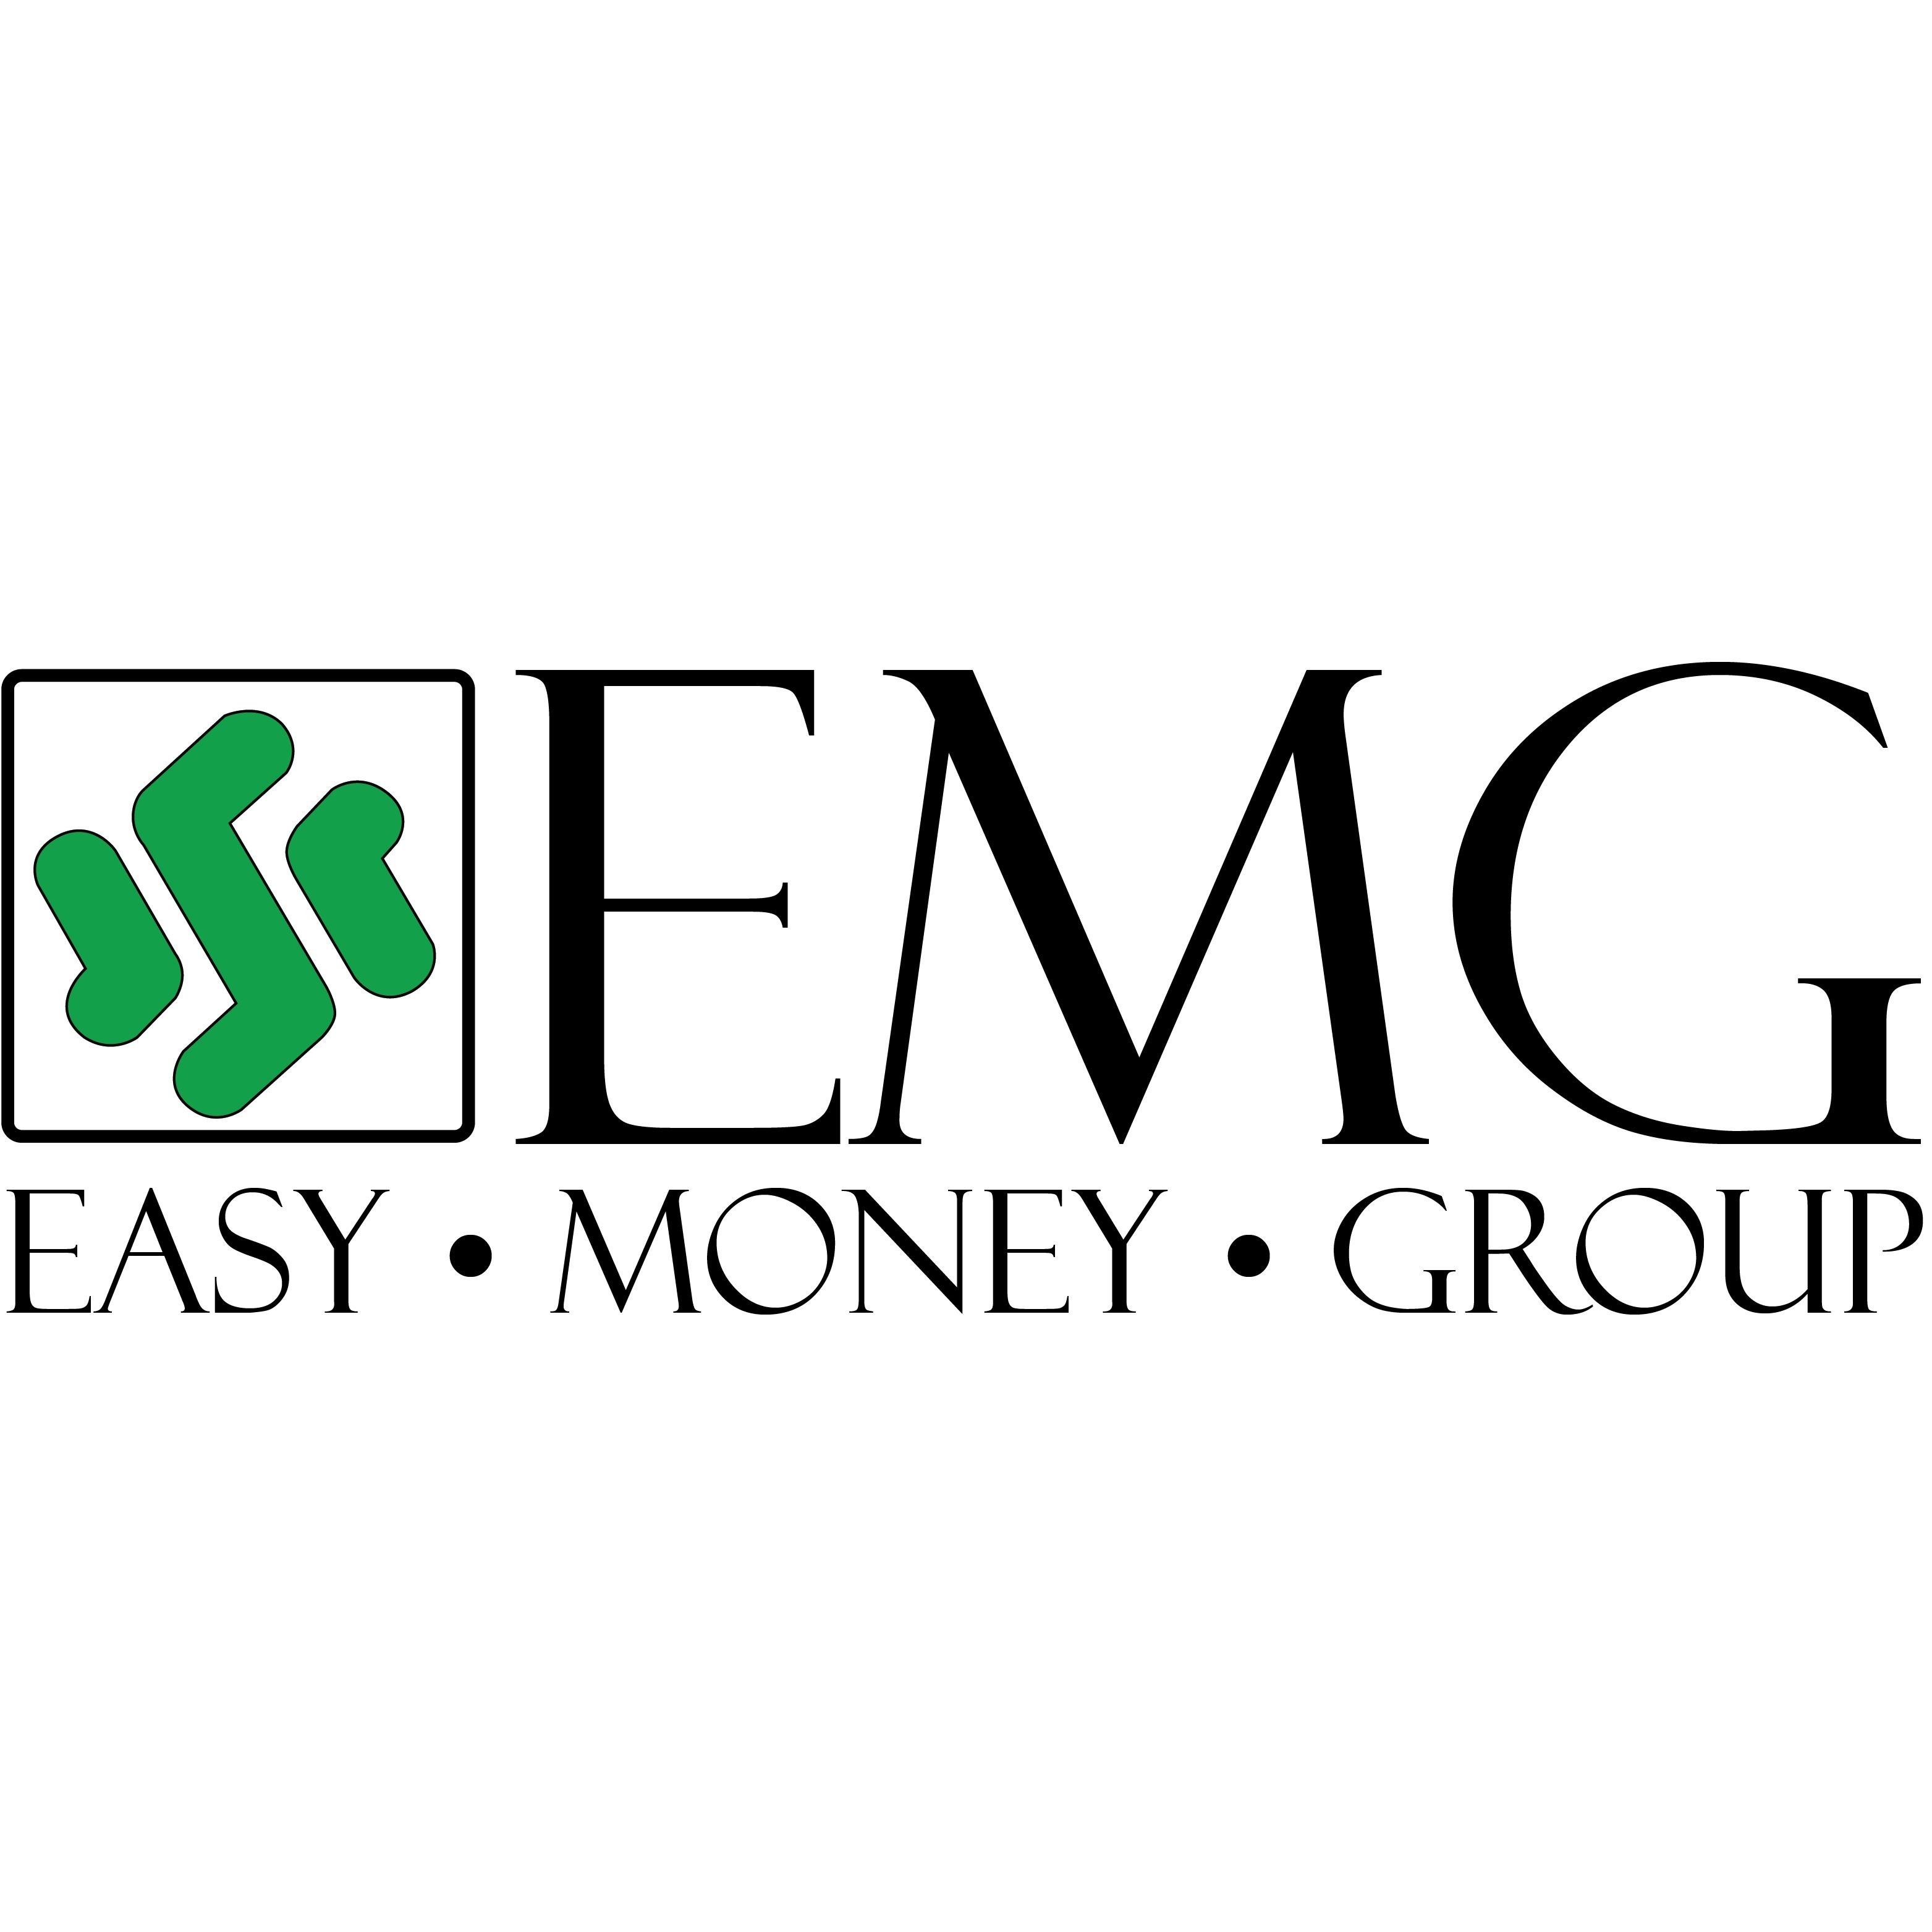 Easy Money EMG - Baton Rouge Logo